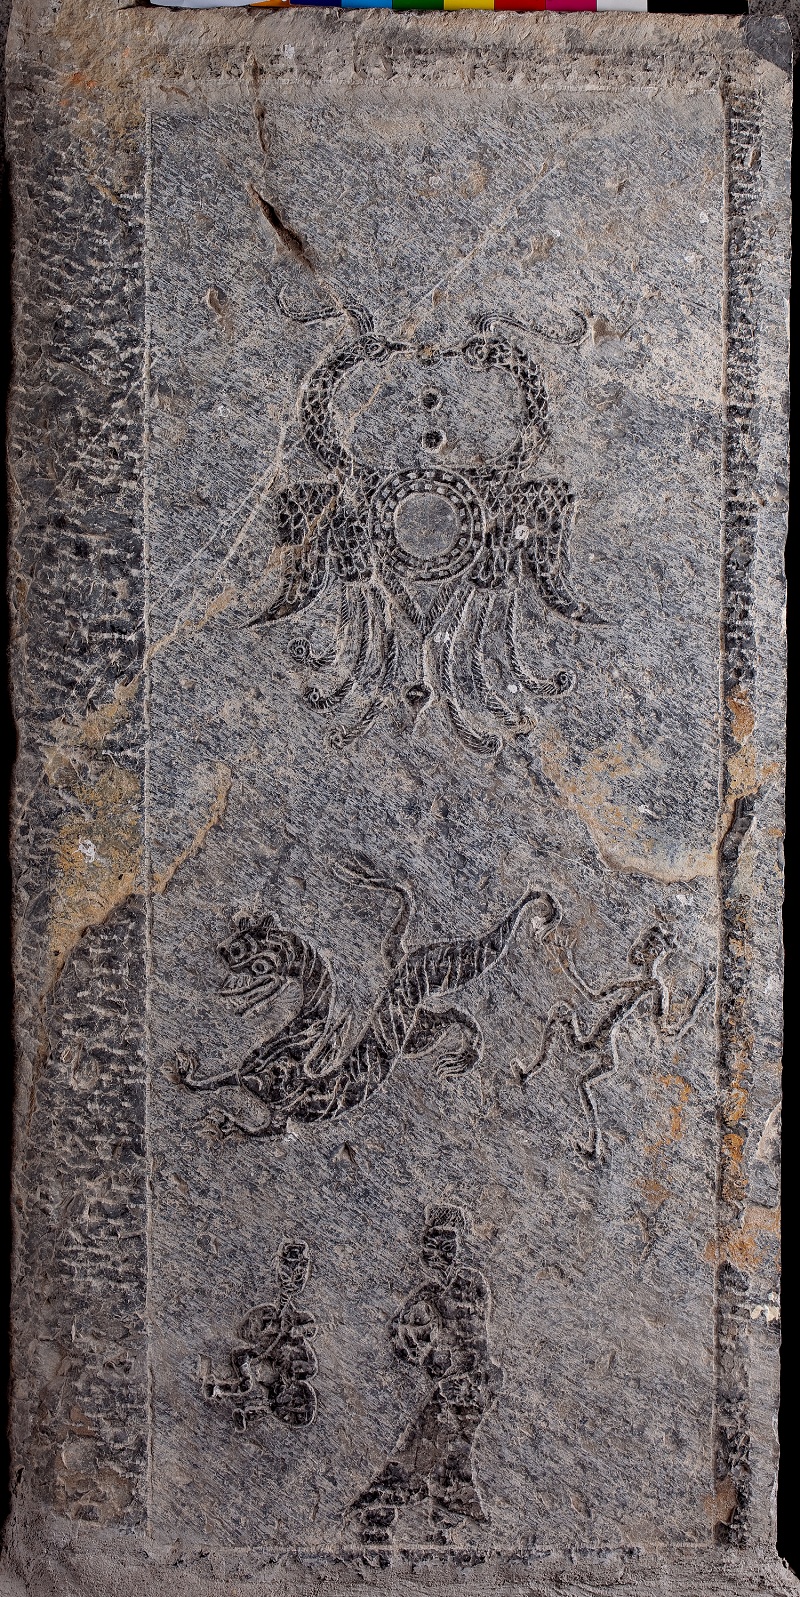 东汉珠联璧合、戏虎、人物墓门画像石